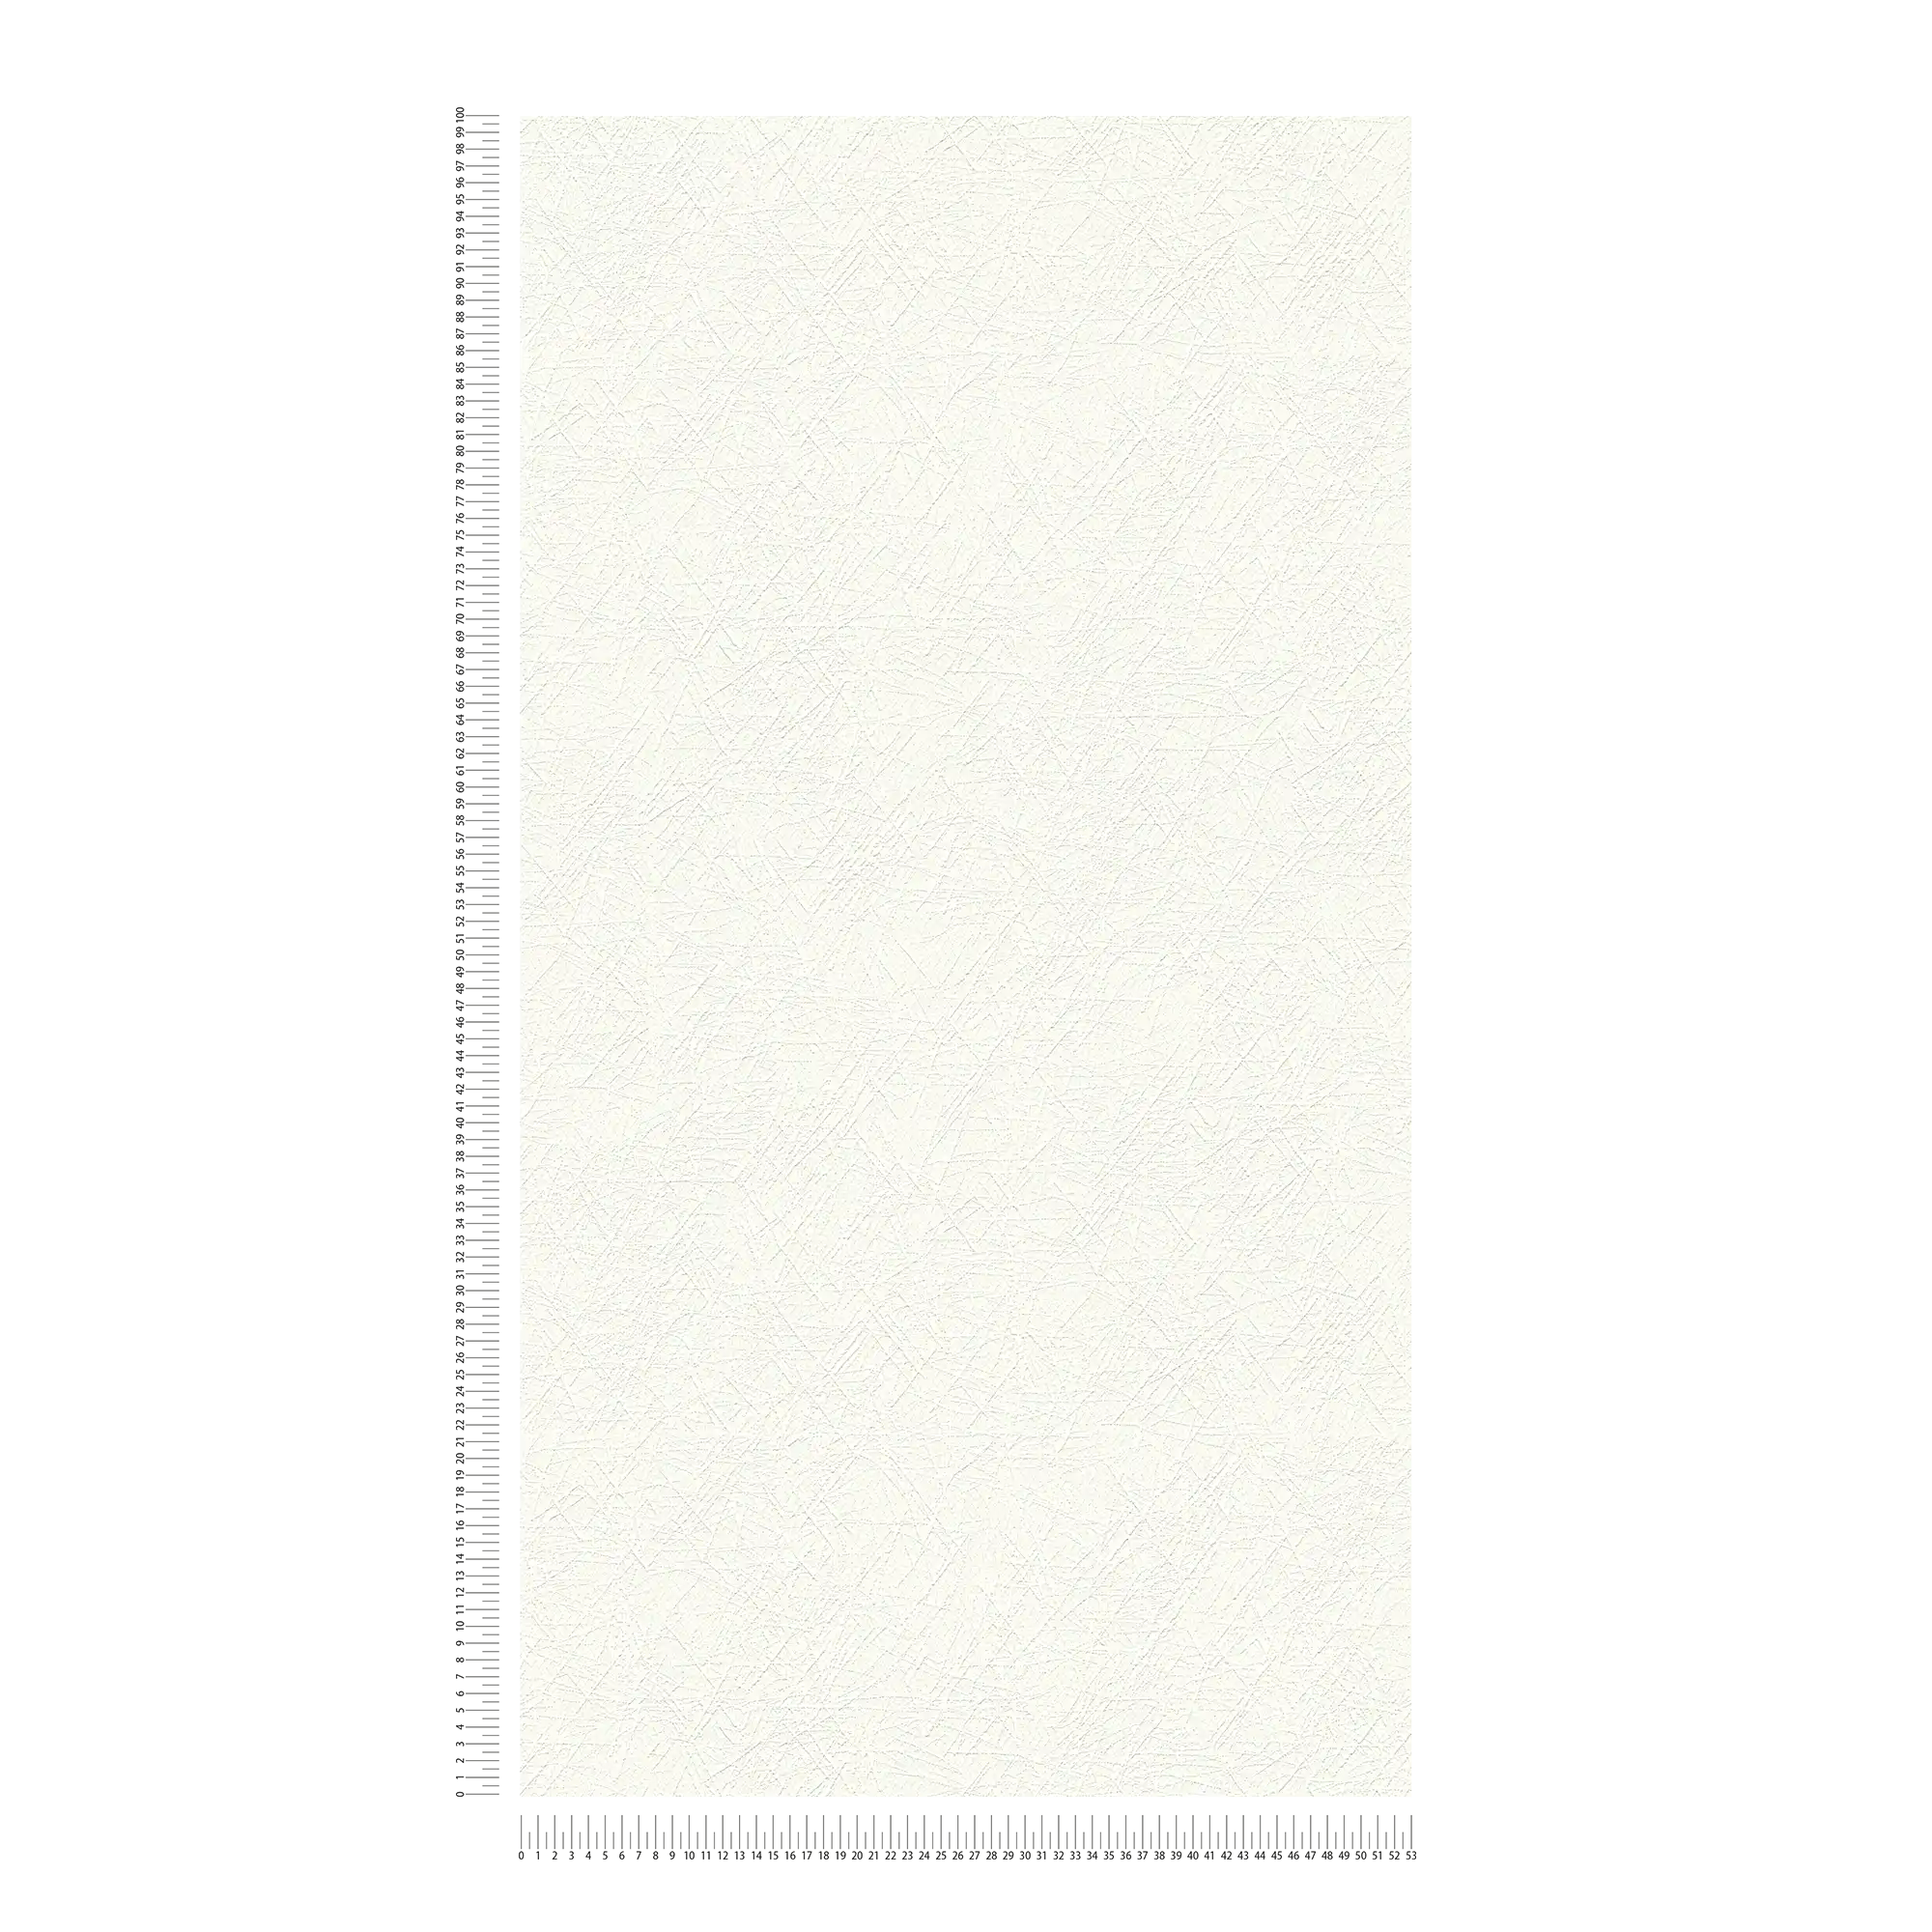             Carta da parati bianca in tessuto non tessuto intonaco retrò con motivo a trama 3D
        